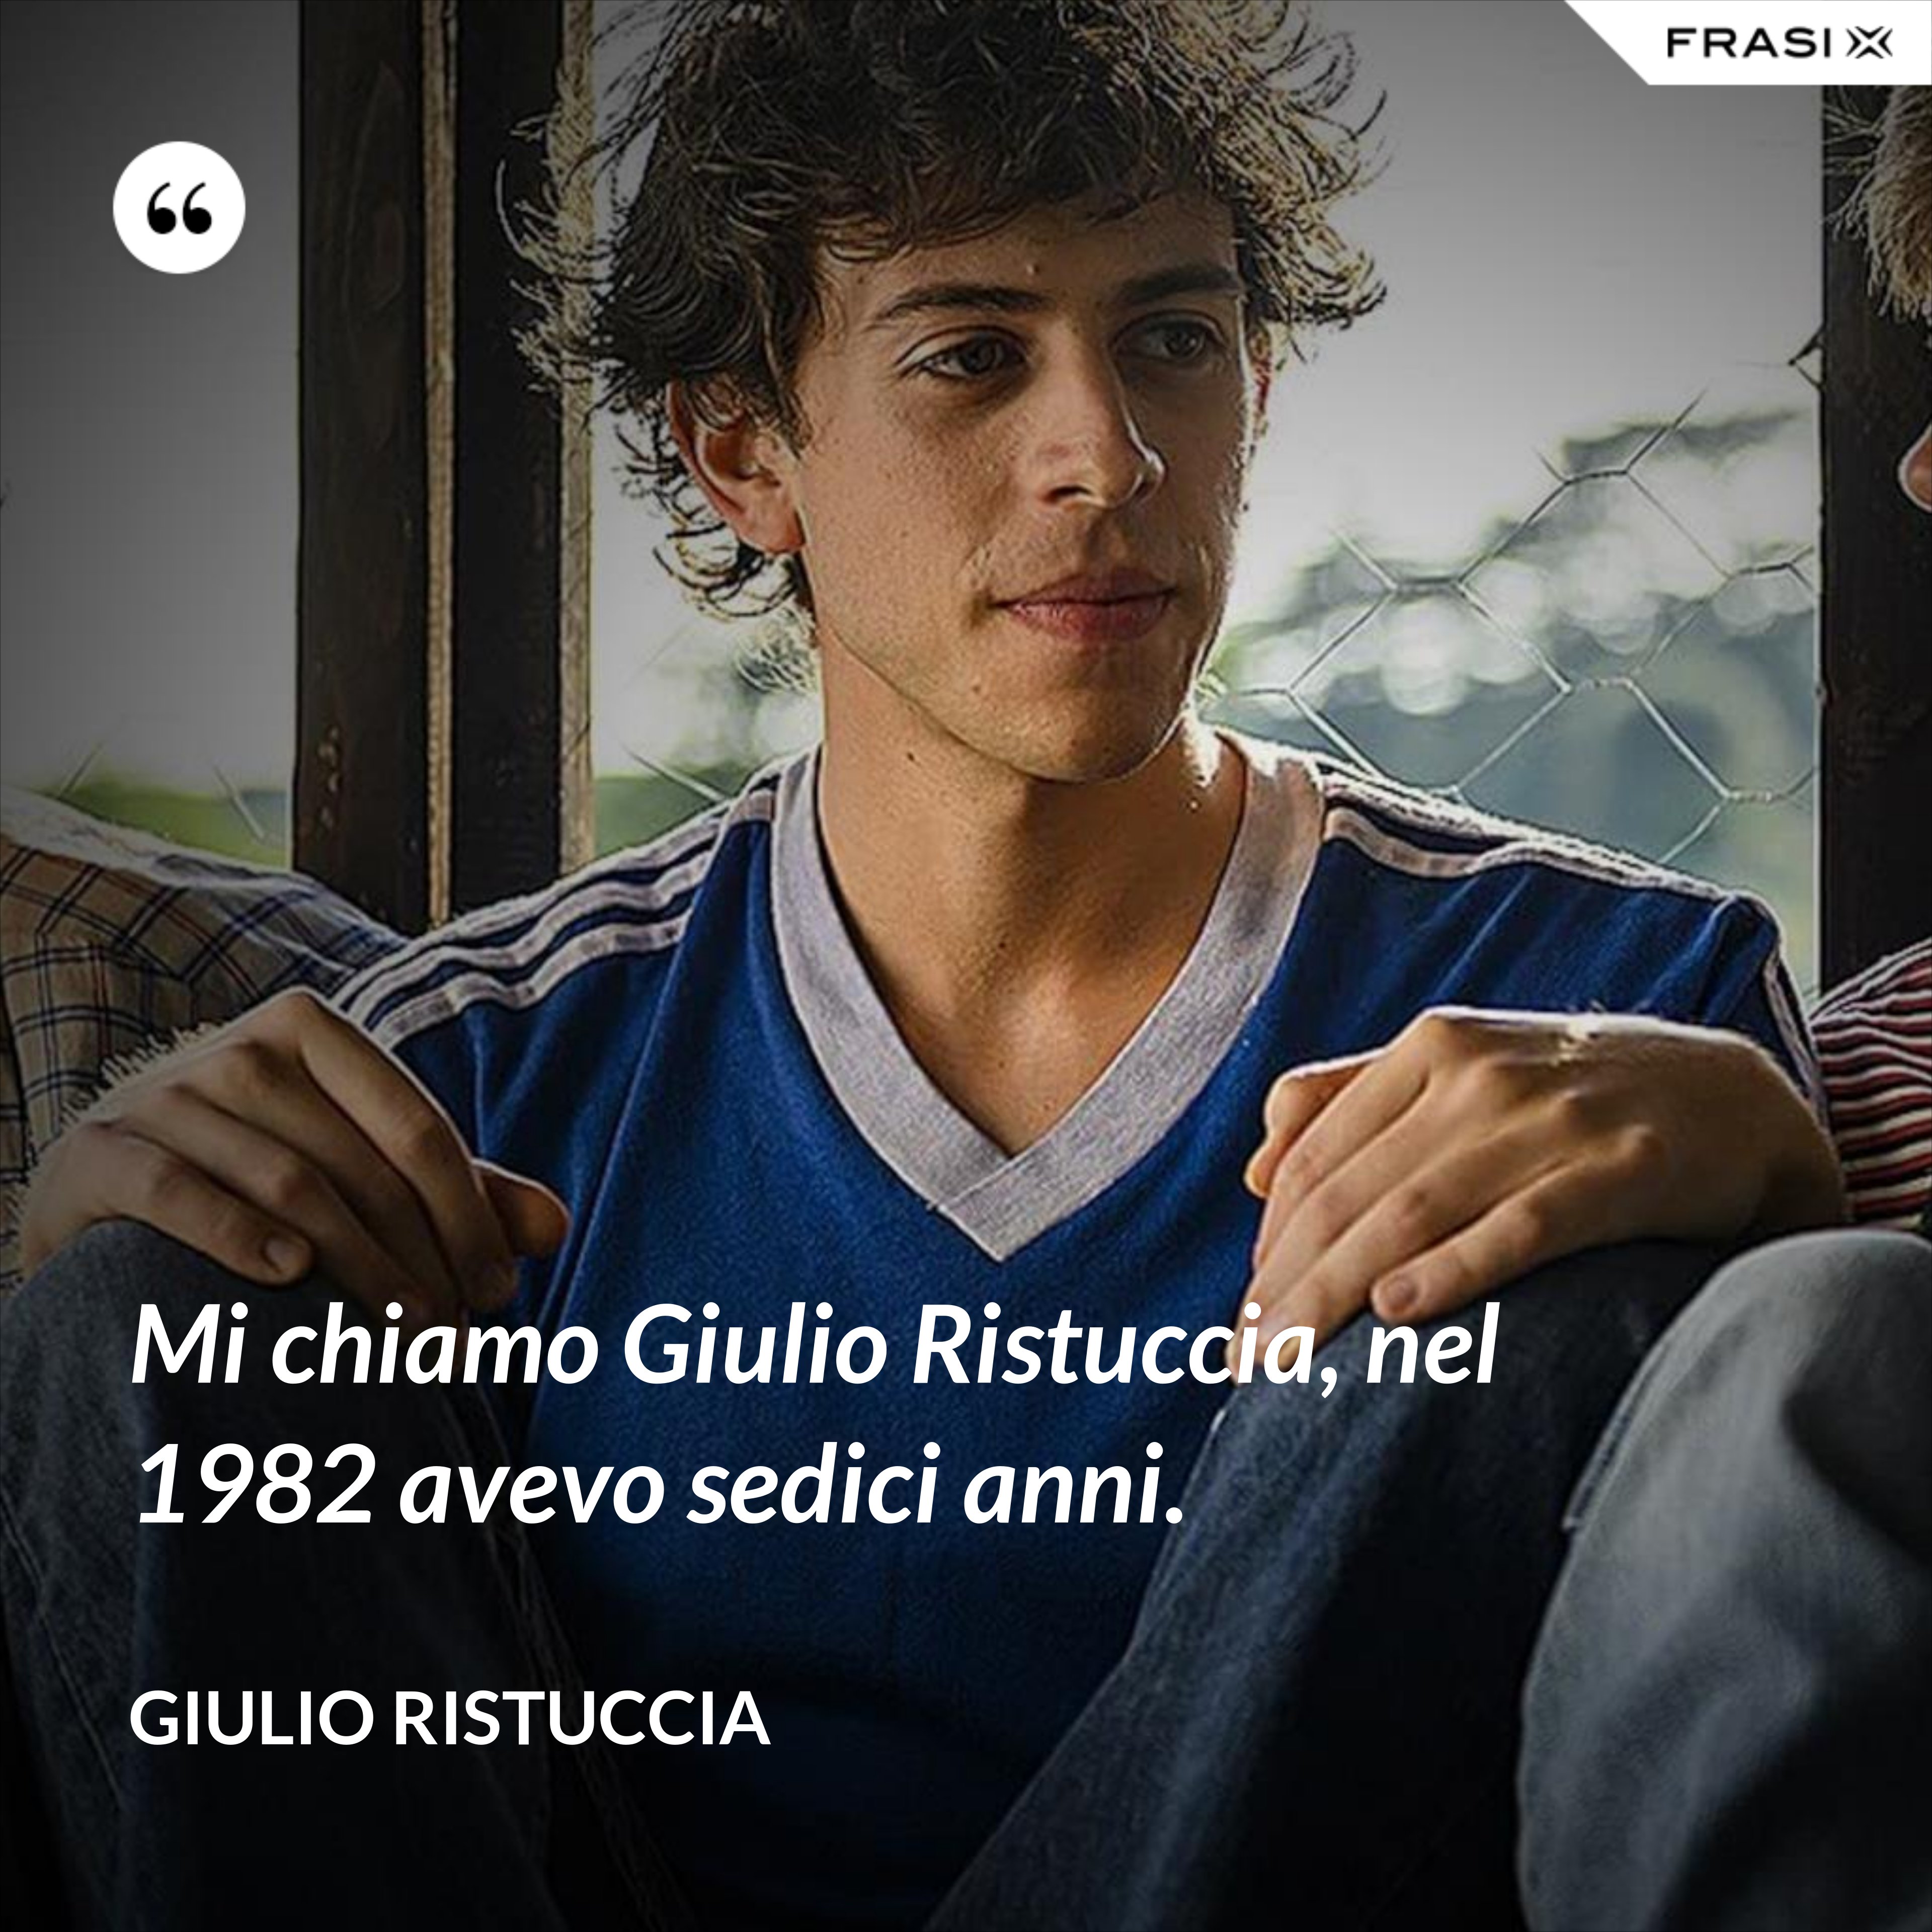 Mi chiamo Giulio Ristuccia, nel 1982 avevo sedici anni. - Giulio Ristuccia